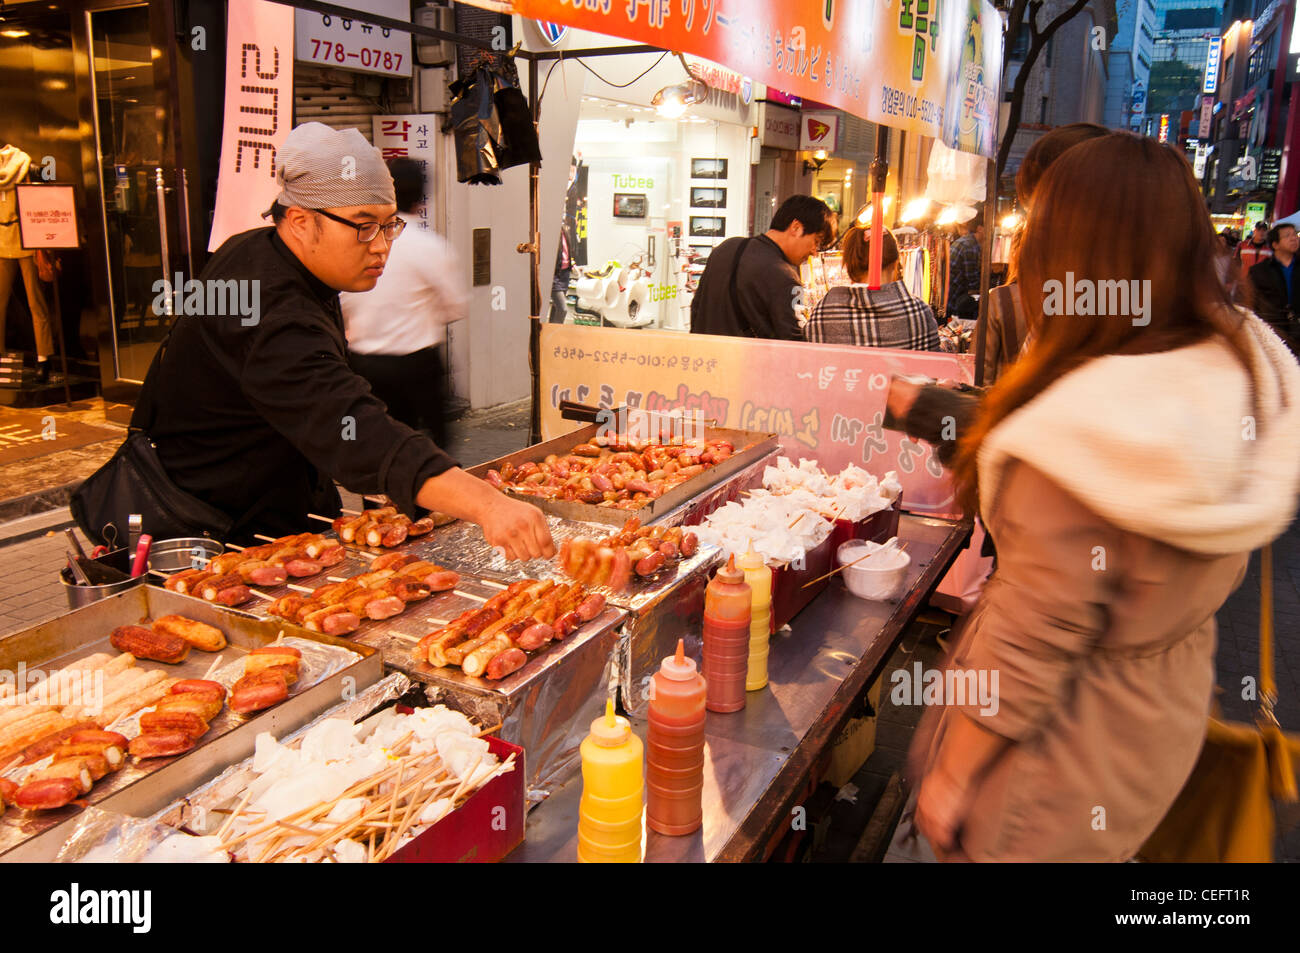 Strade cibo bancarelle che vendono vari cibi e spuntini in serata nel famoso quartiere dello shopping di a Myeongdong a Seul Foto Stock